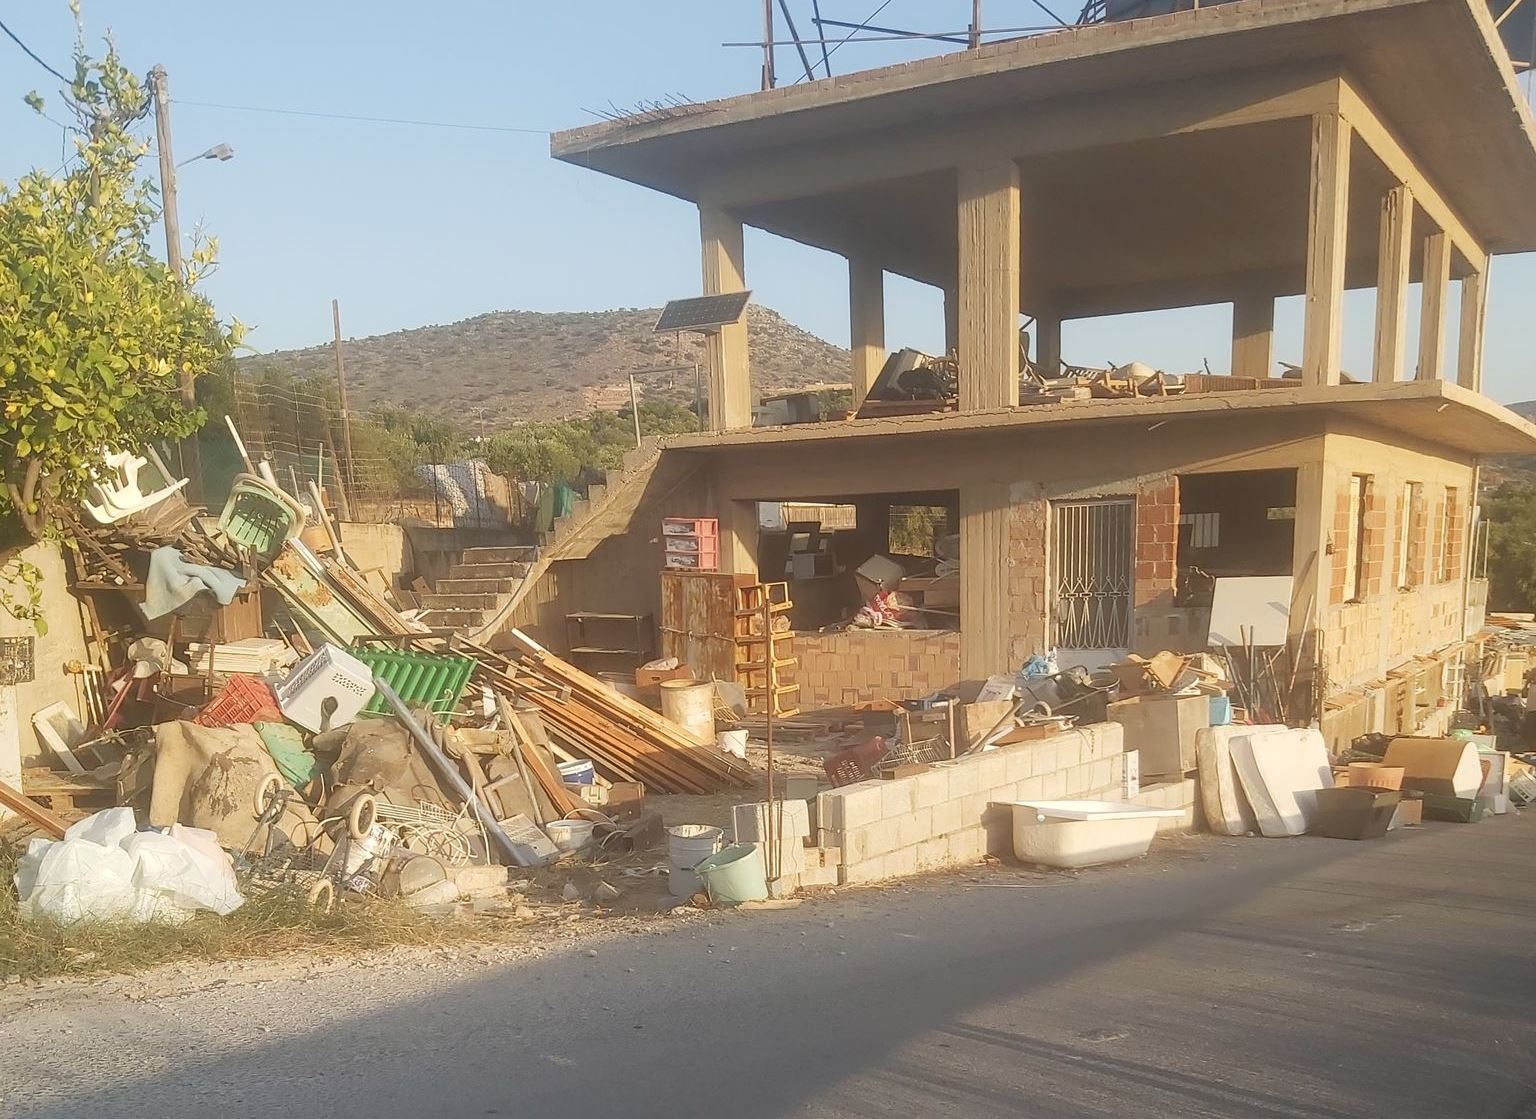 Ο Δήμος Αγίου Νικολάου απομάκρυνε όγκους απορριμμάτων που συγκέντρωνε ρακοσυλλέκτης